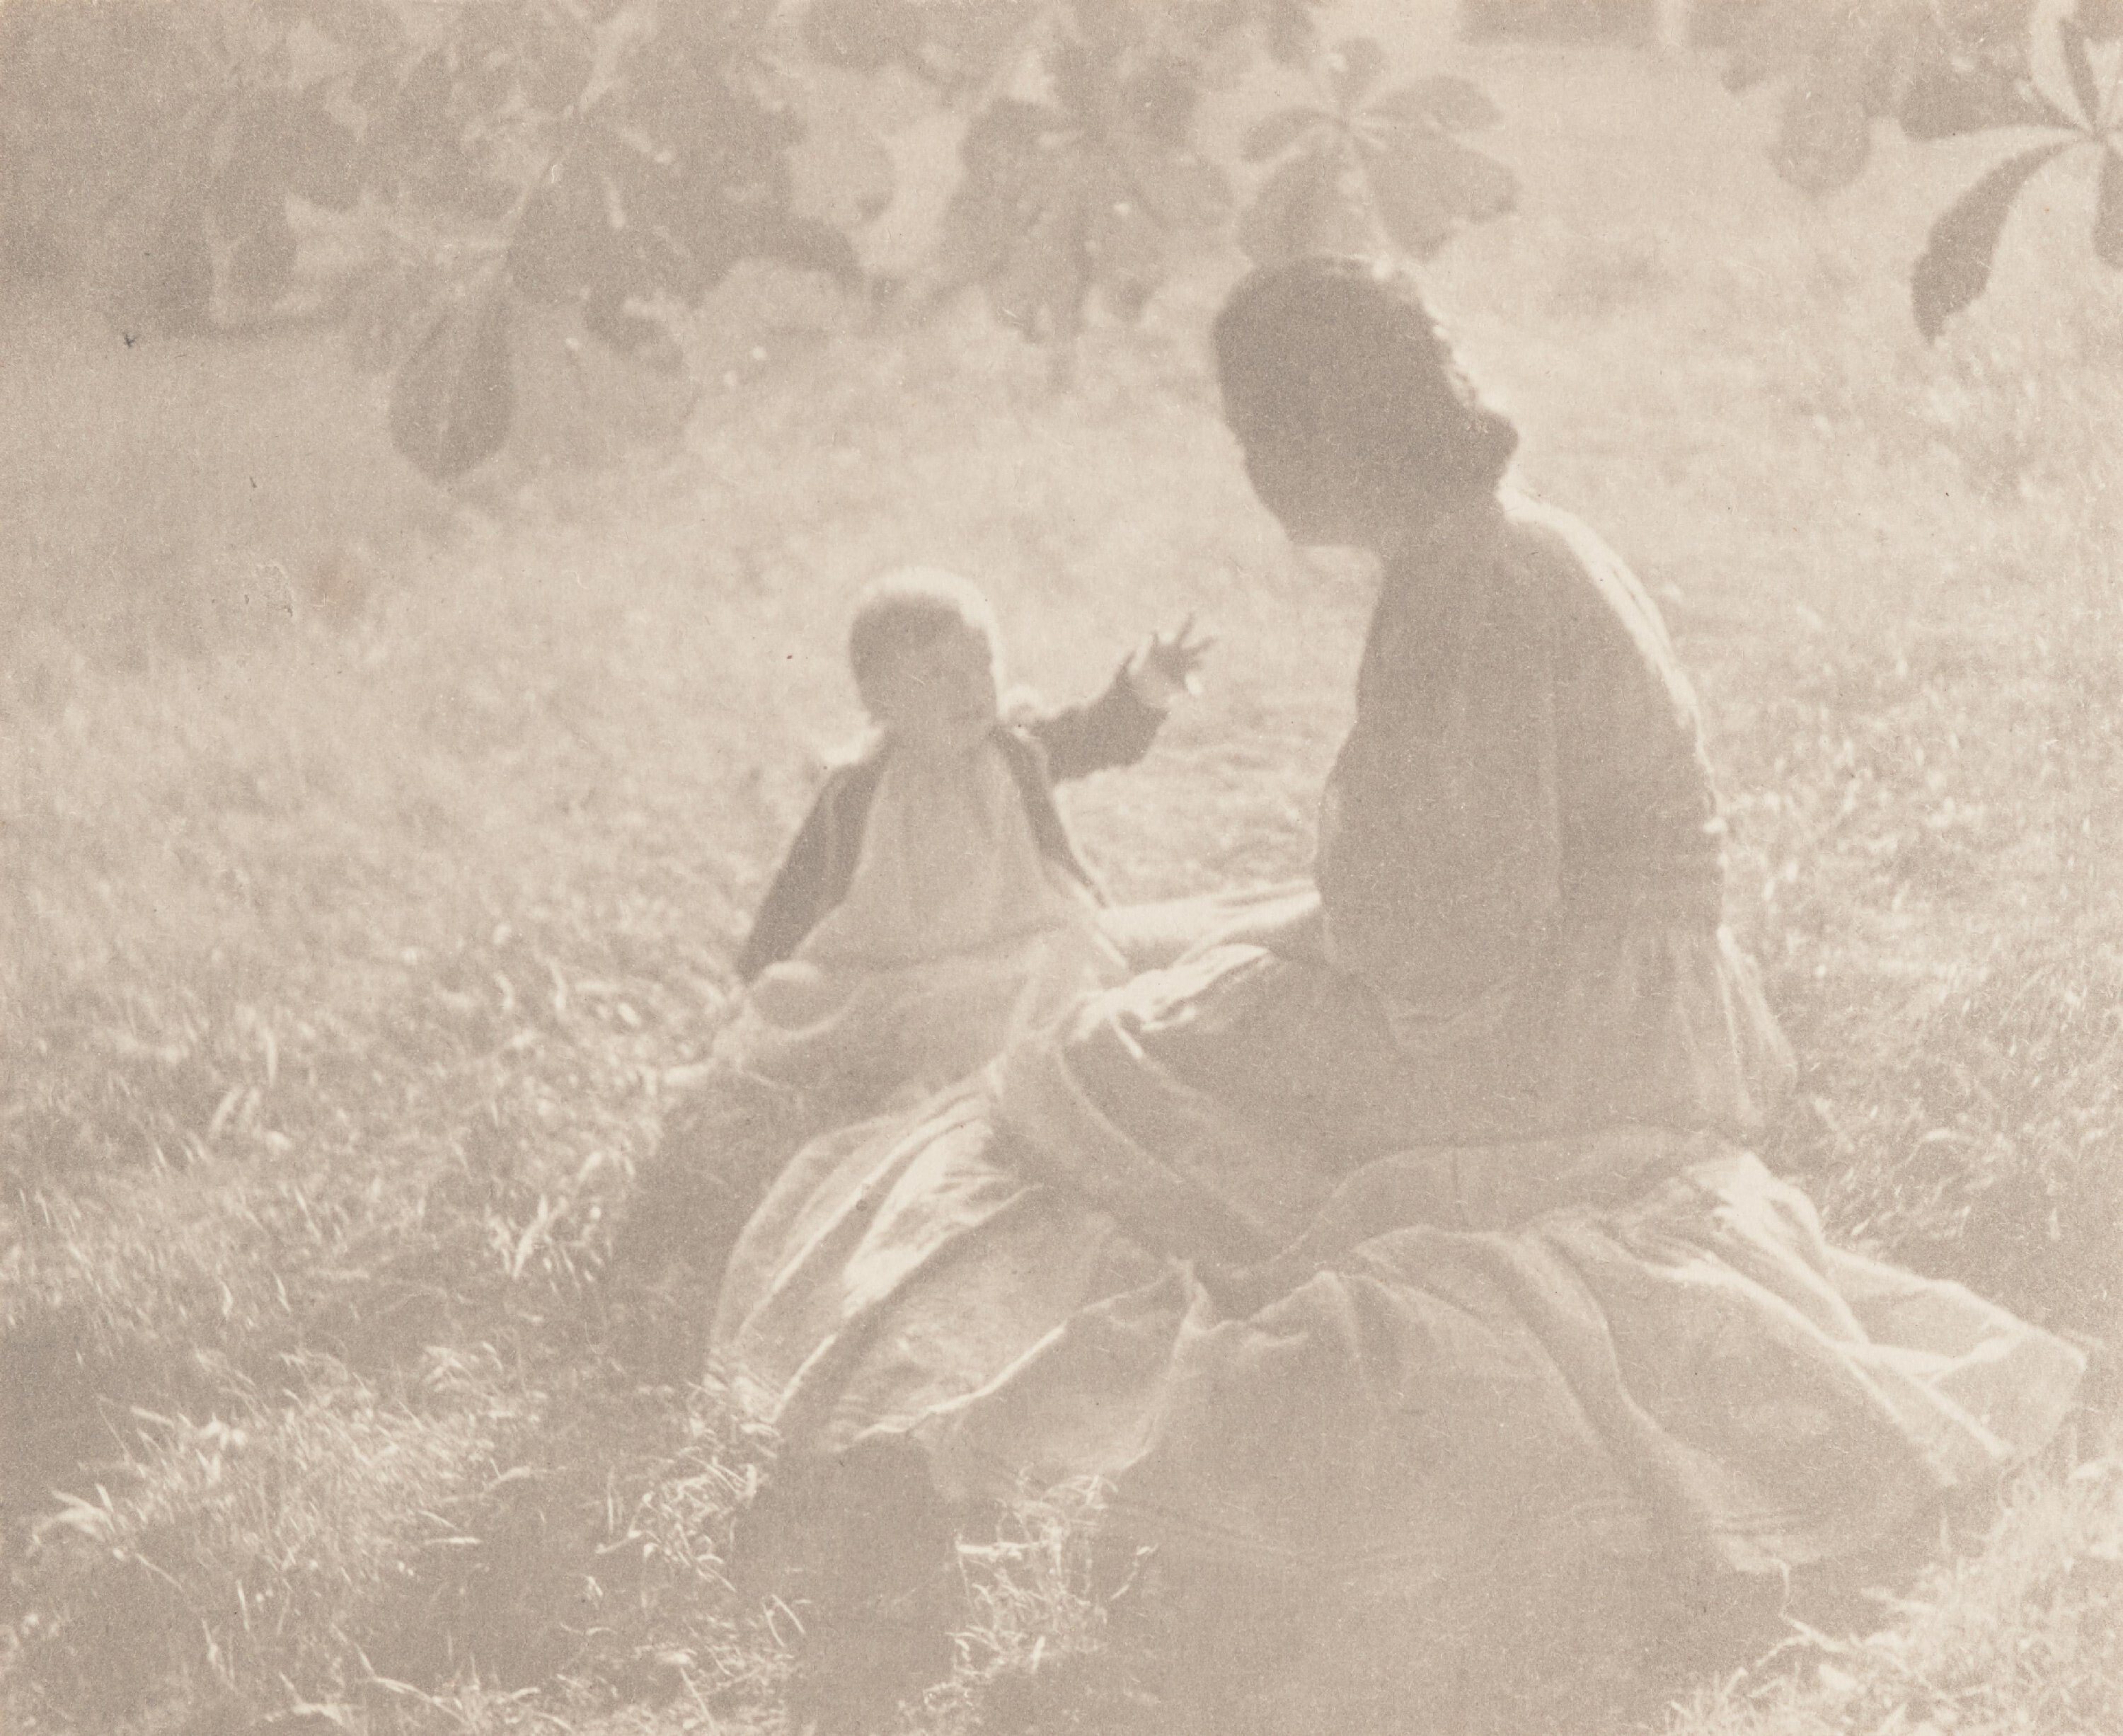 Мать и дитя - Солнечный свет, 1905 г. Фотограф Эдвард Стайхен